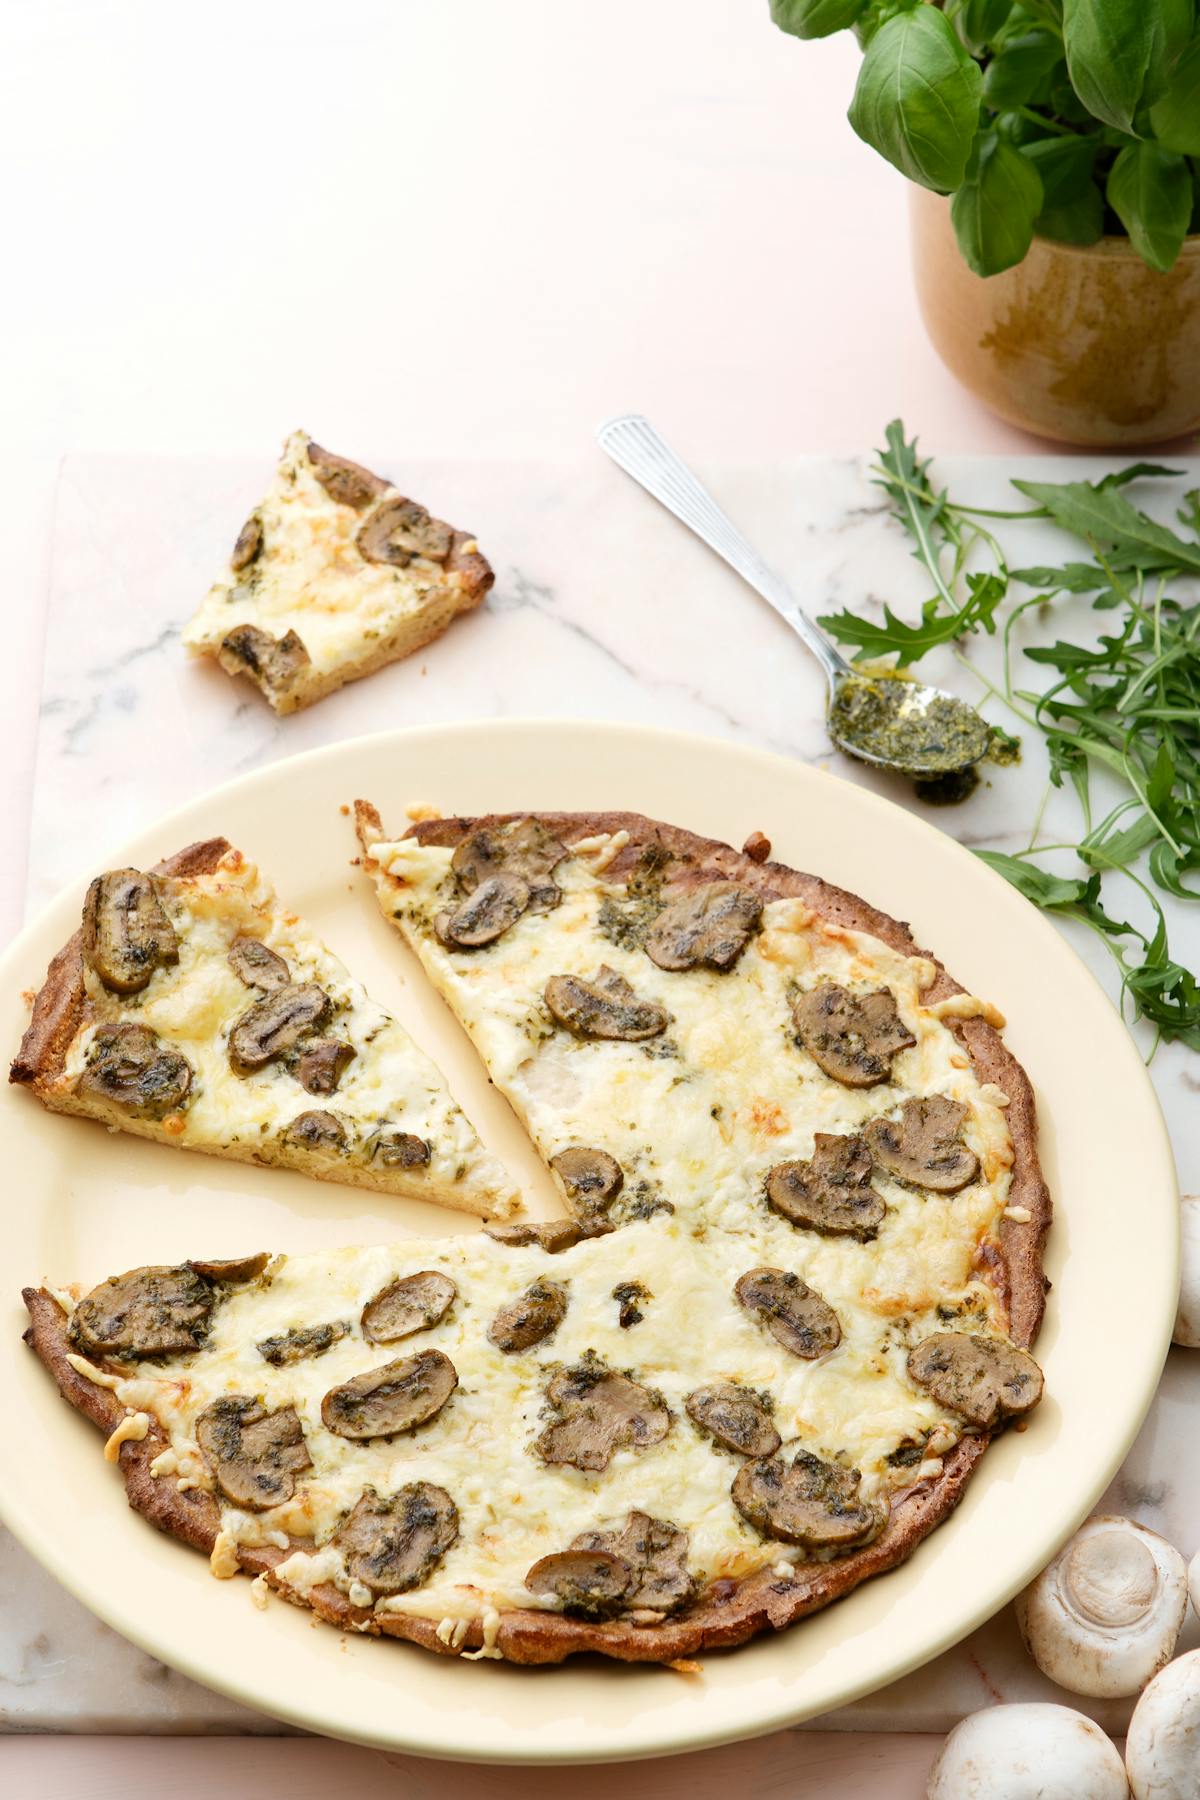 Pizza bianca med pesto och champinjoner